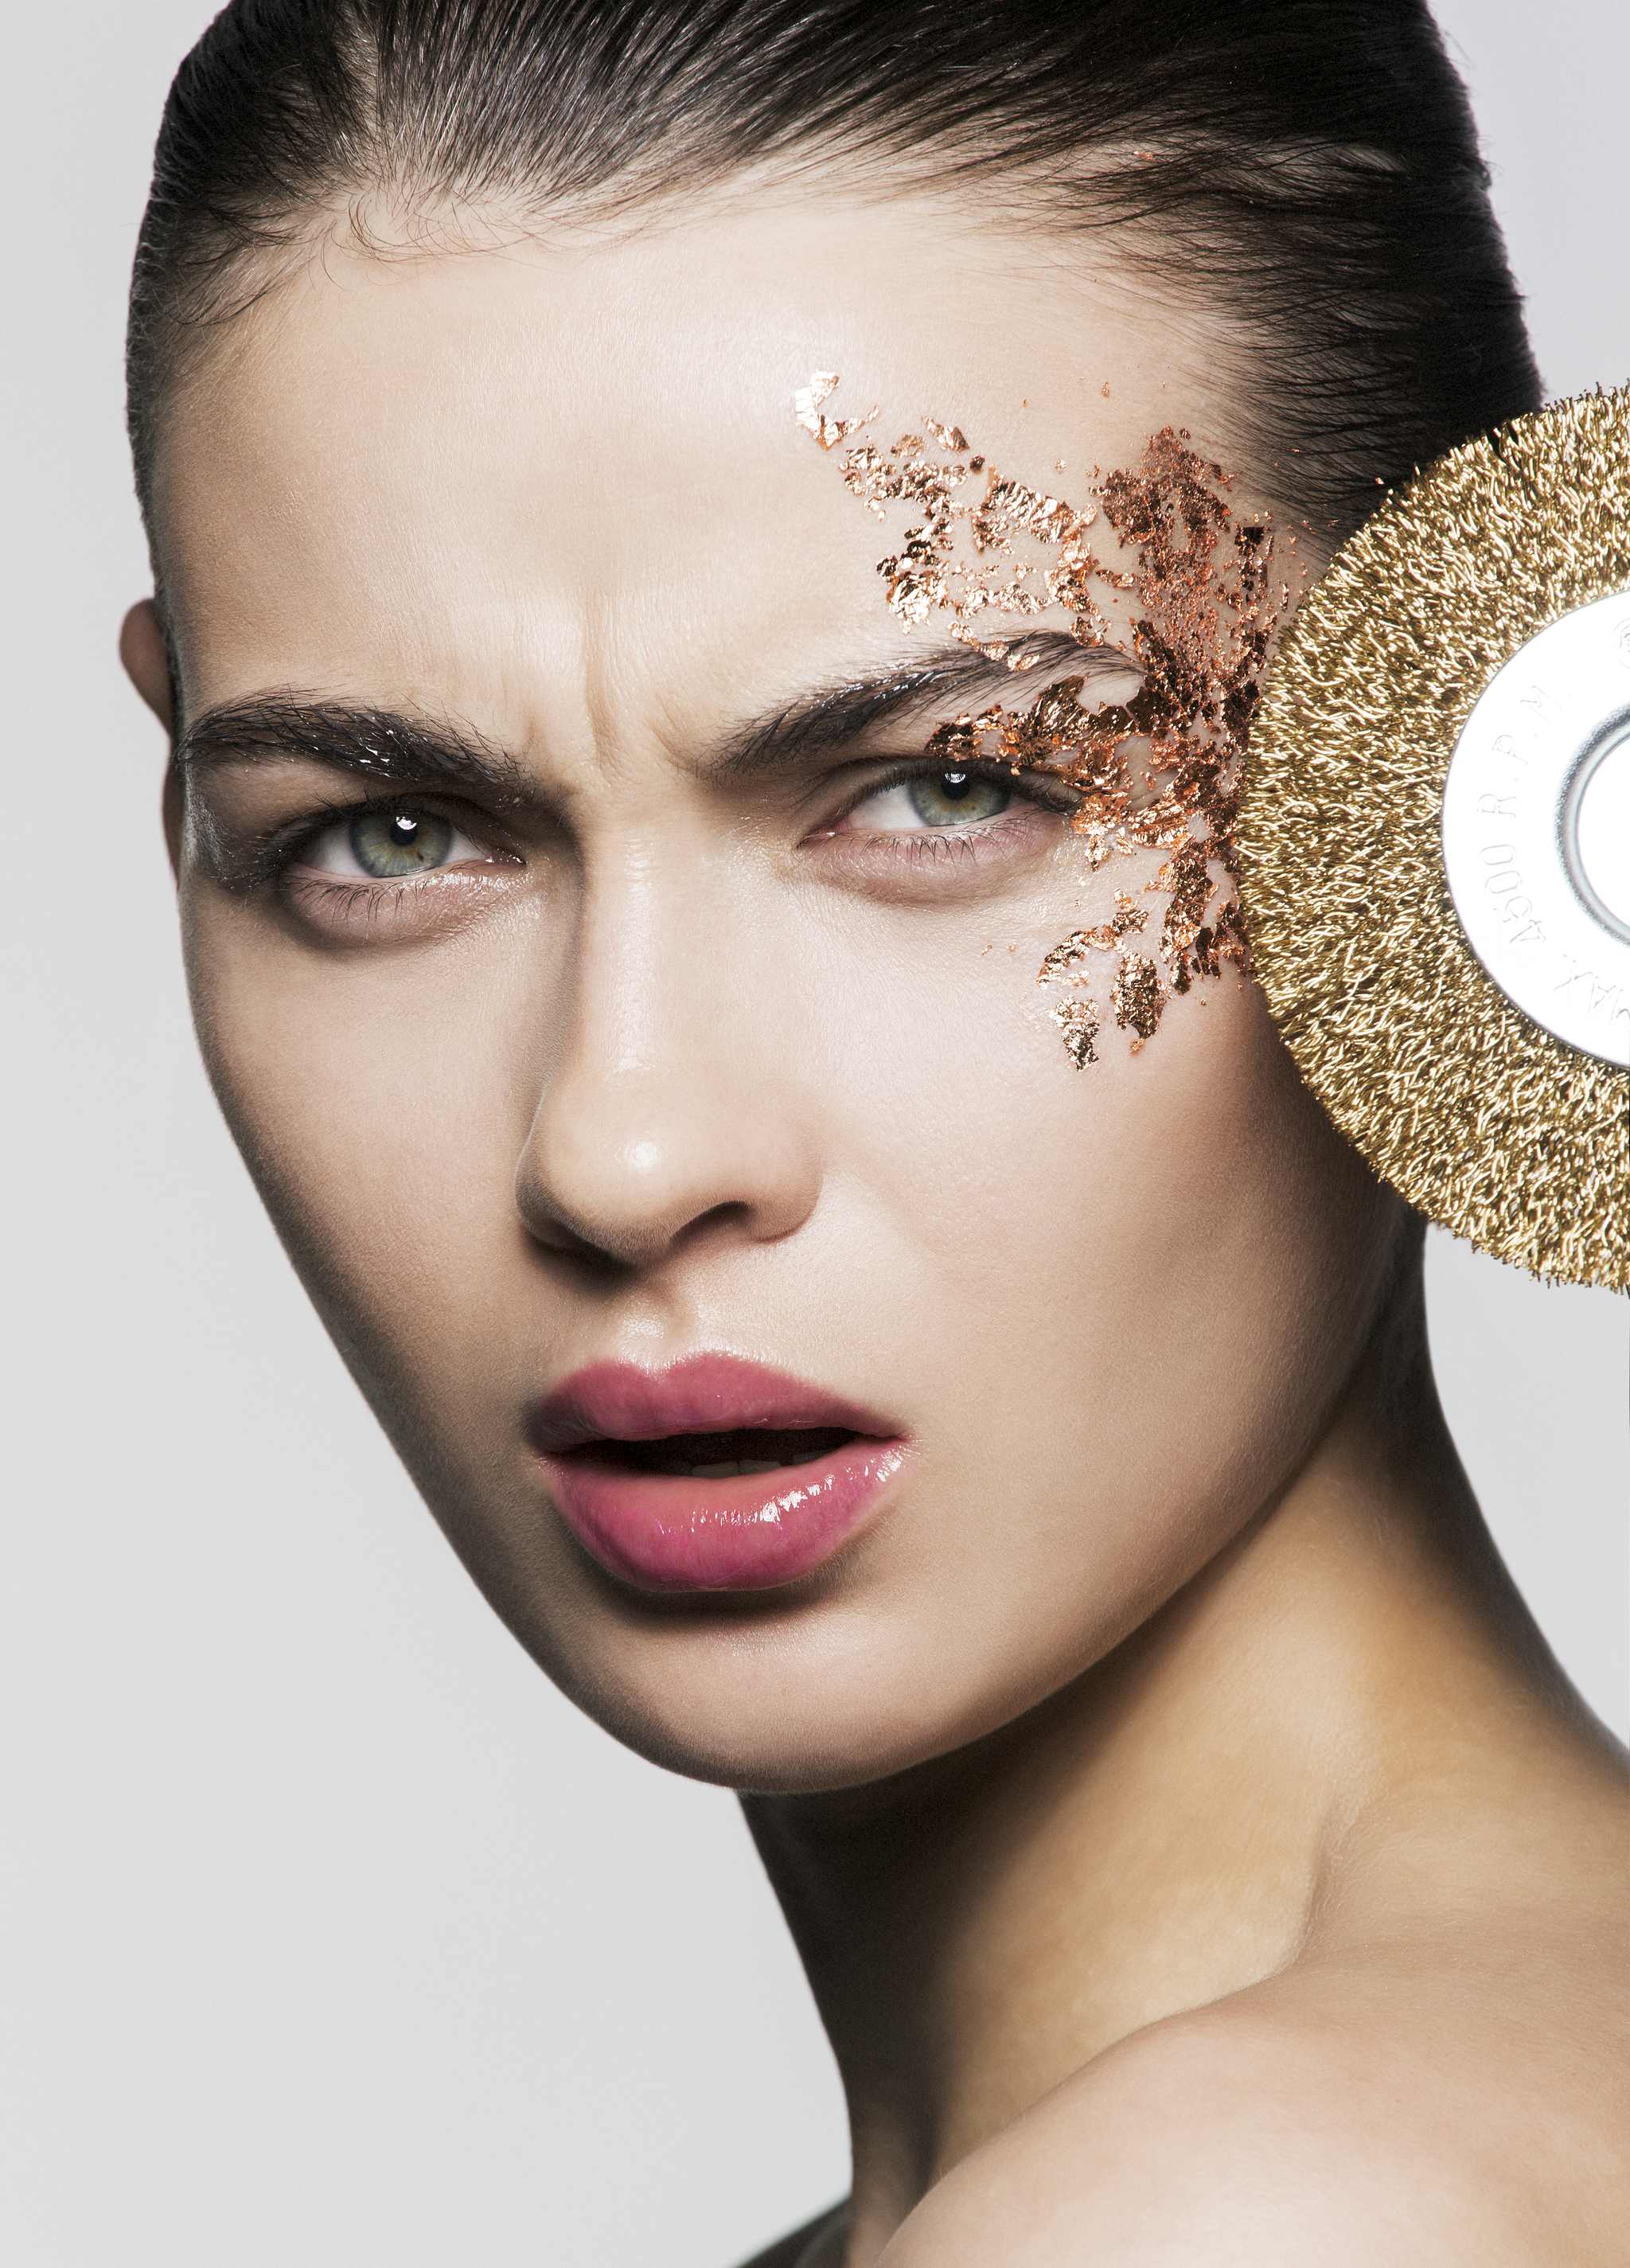 La limpieza facial con punta de diamante ayuda a rejuvenecer la piel y reducir los poros.